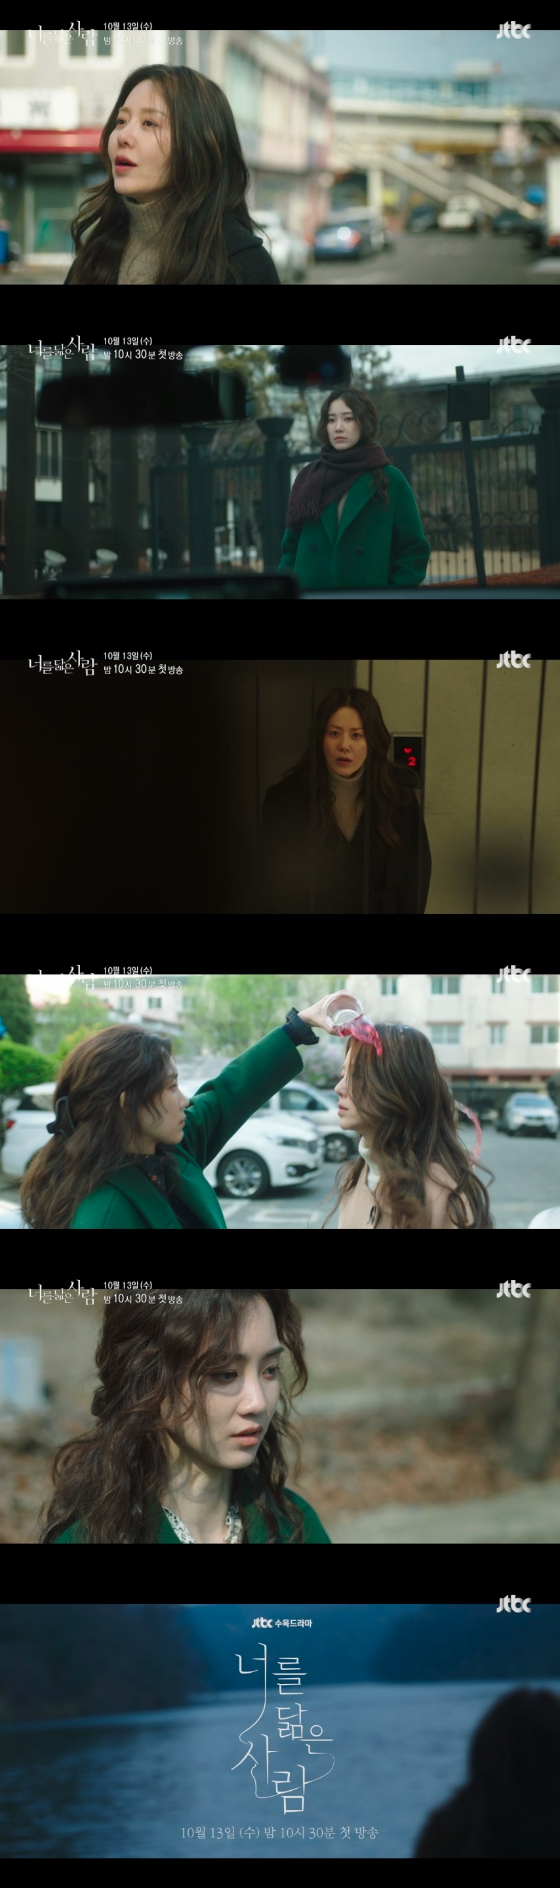 고현정 주연의 JTBC 새 수목드라마 '너를 닮은 사람' 3차 티저가 공개됐다./사진제공=셀트리온 엔터테인먼트, JTBC스튜디오